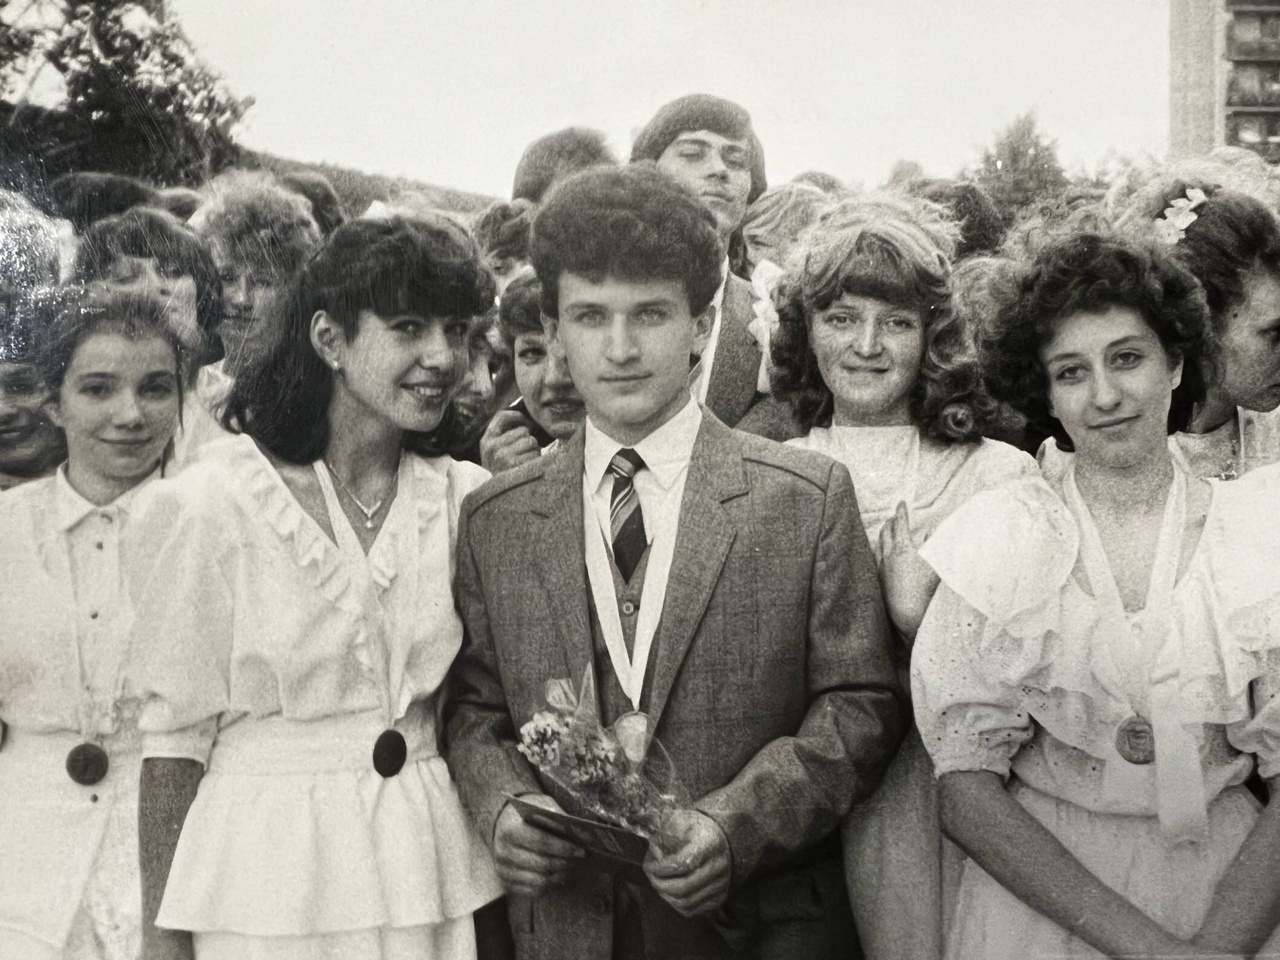 15 крутых фотографий выпускников 80-90-х годов, которые дадут фору любым современным школьникам 46